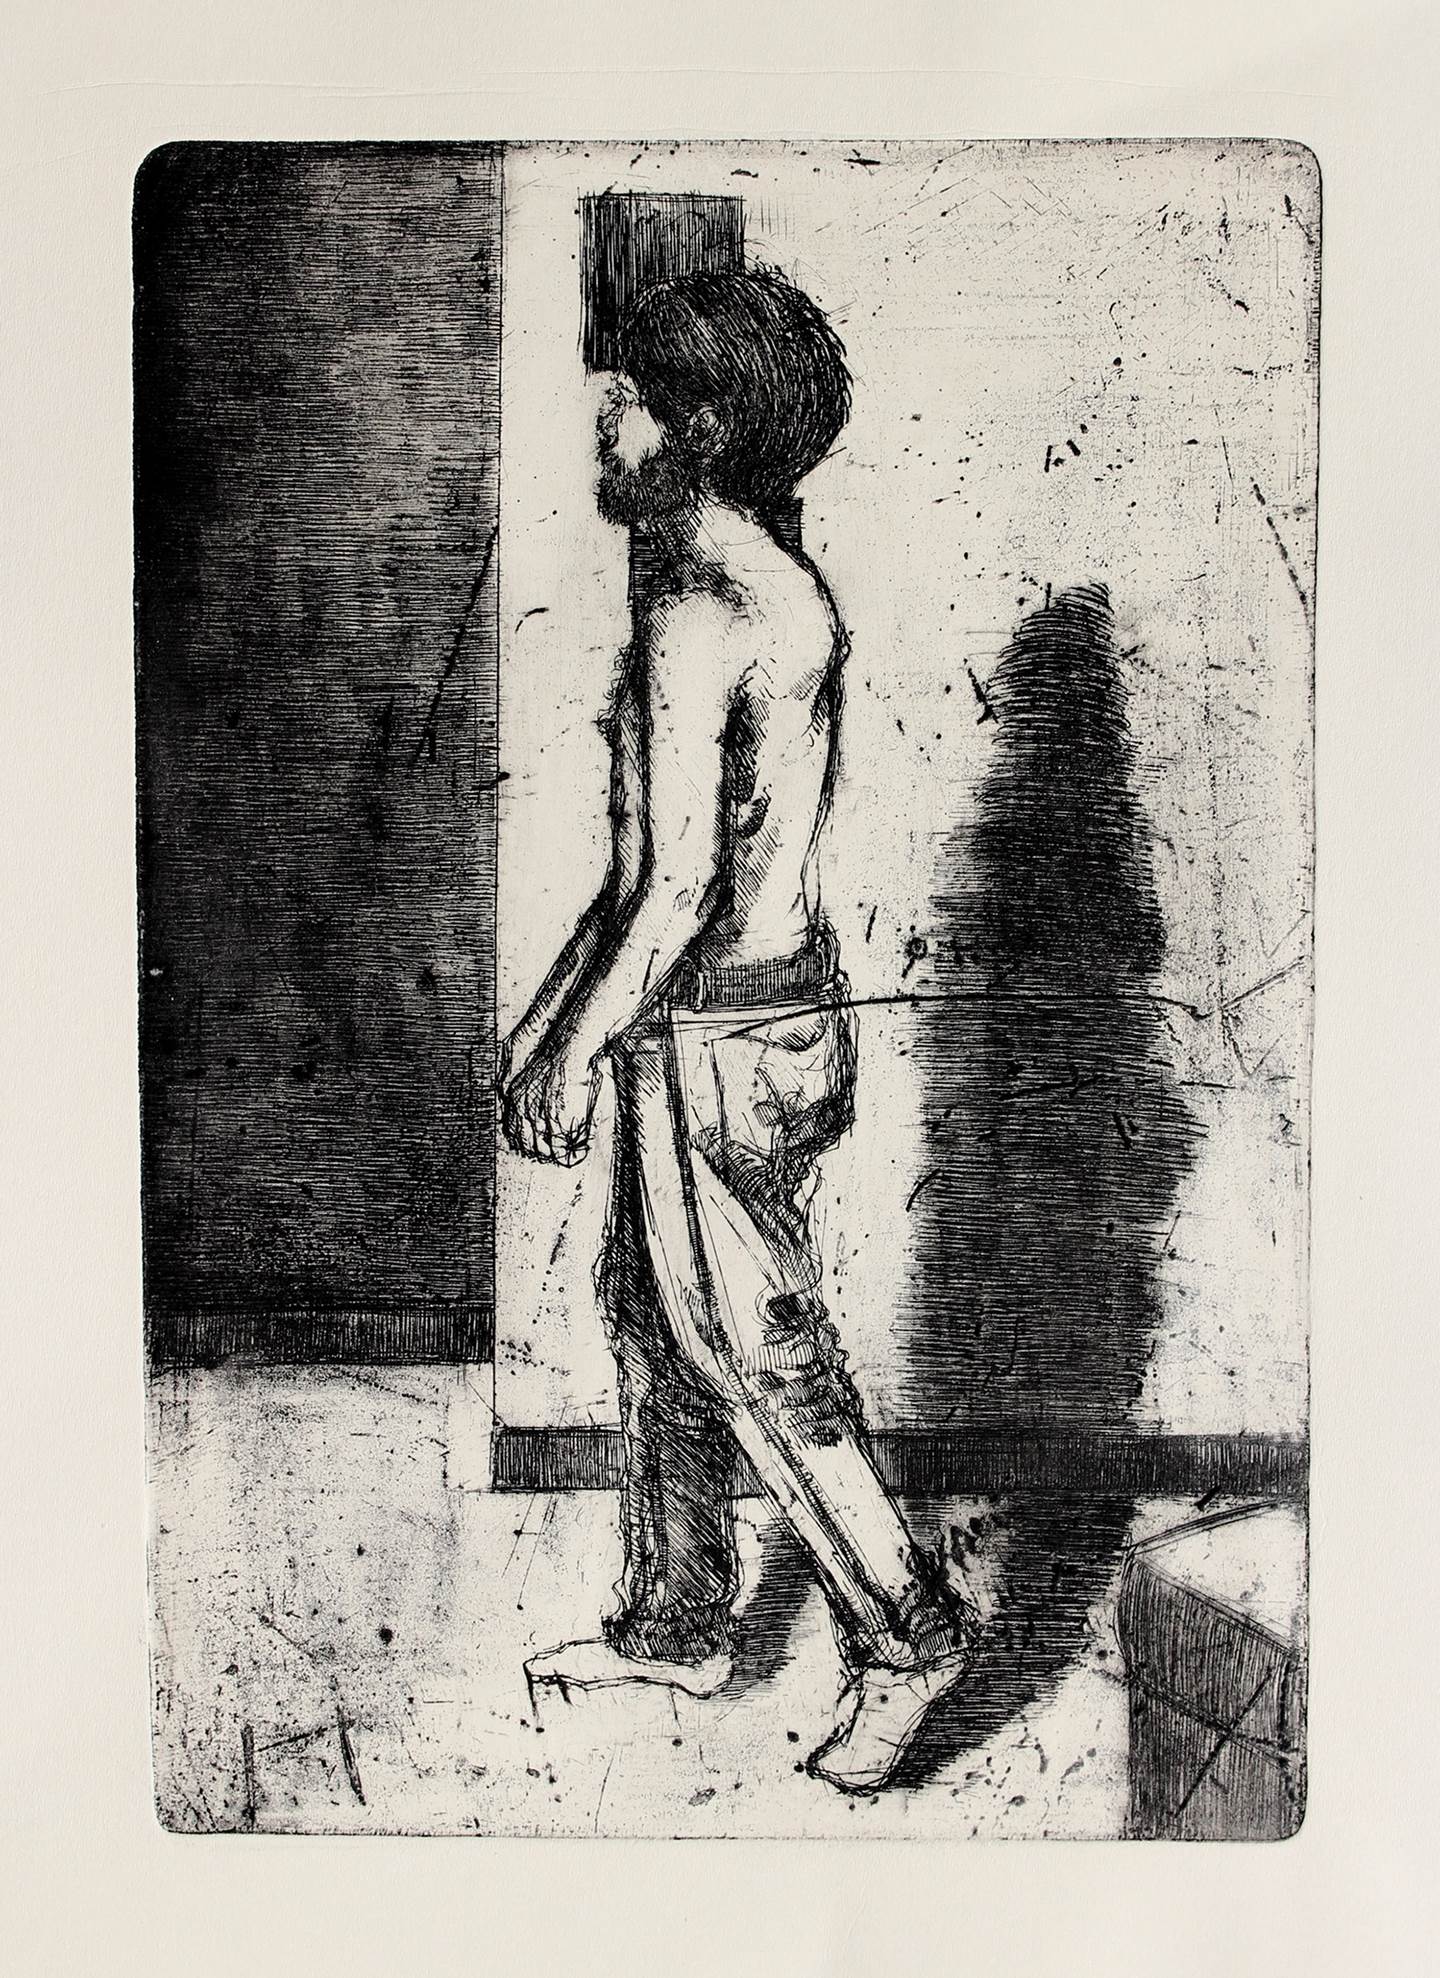 Ele caminha/A caminho da morte, original Human Figure Etching Drawing and Illustration by Flor de Ceres Rabaçal